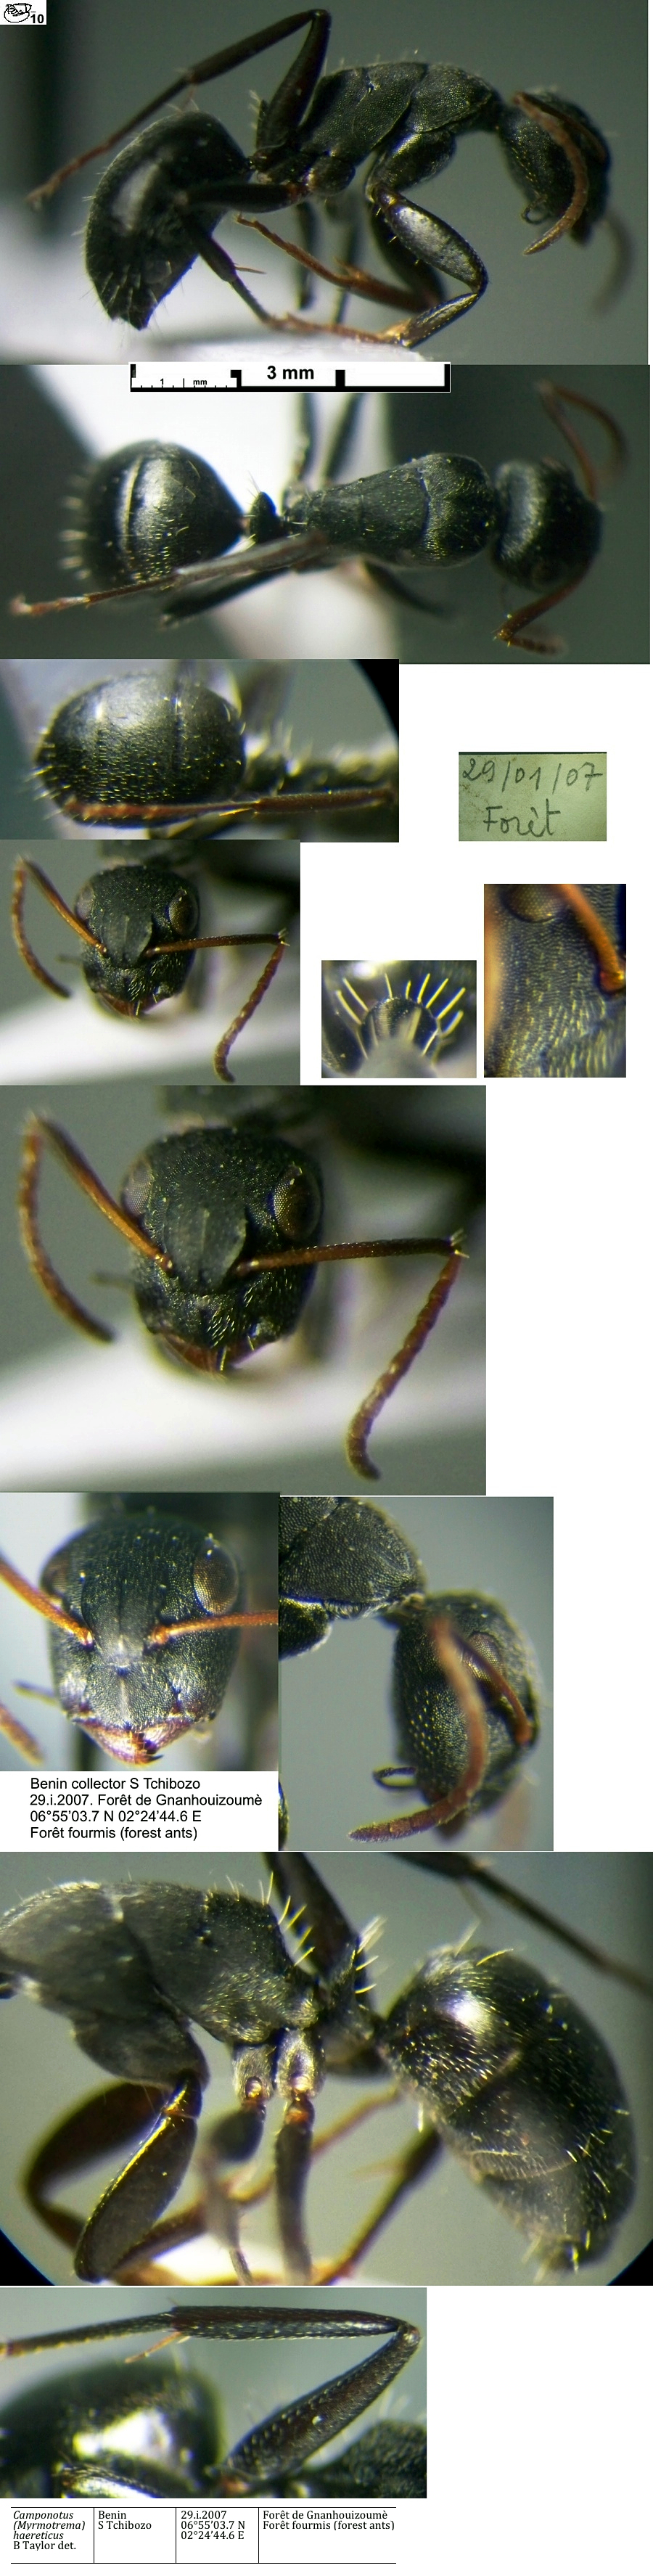 {Camponotus haereticus minor}